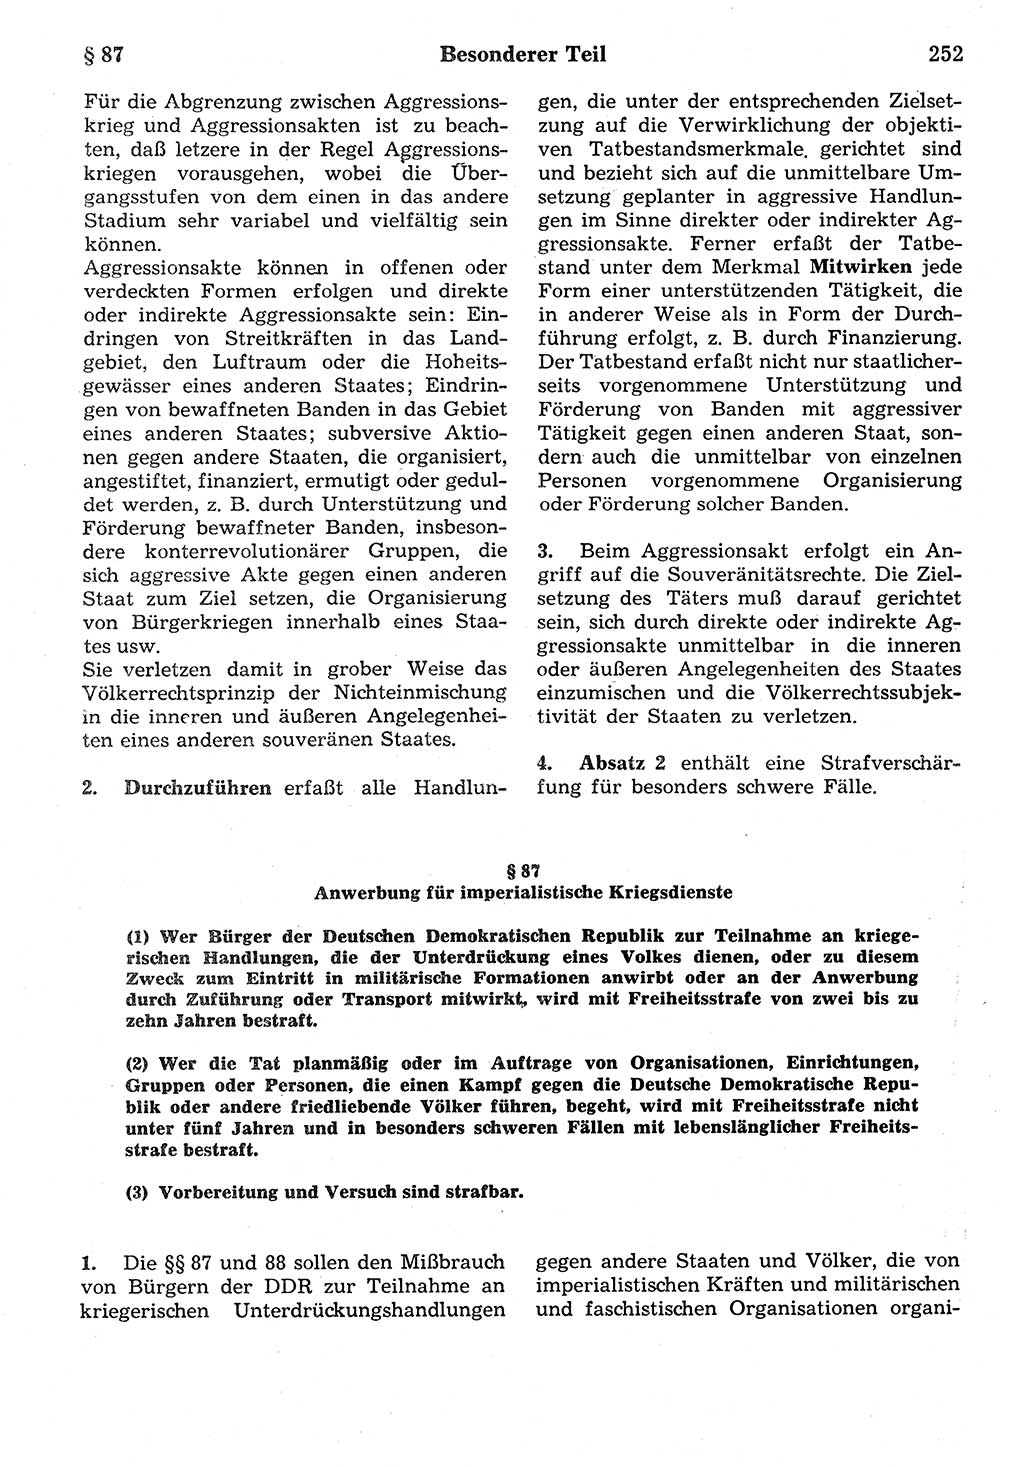 Strafrecht der Deutschen Demokratischen Republik (DDR), Kommentar zum Strafgesetzbuch (StGB) 1987, Seite 252 (Strafr. DDR Komm. StGB 1987, S. 252)